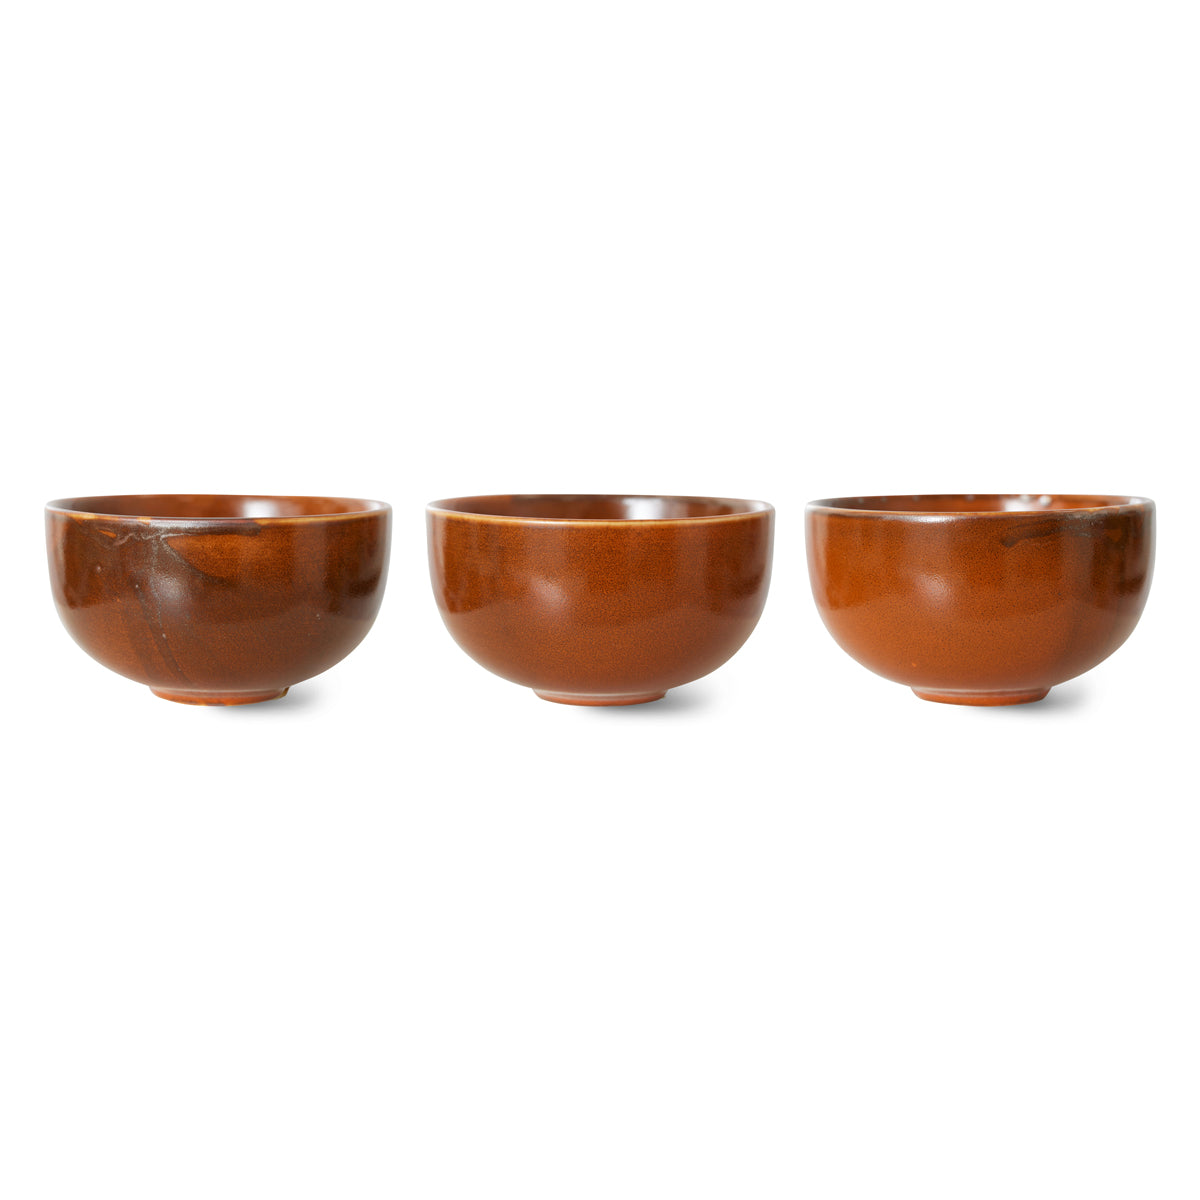 HKliving Home Chef Ceramics: bowl Burned Orange ACE7206